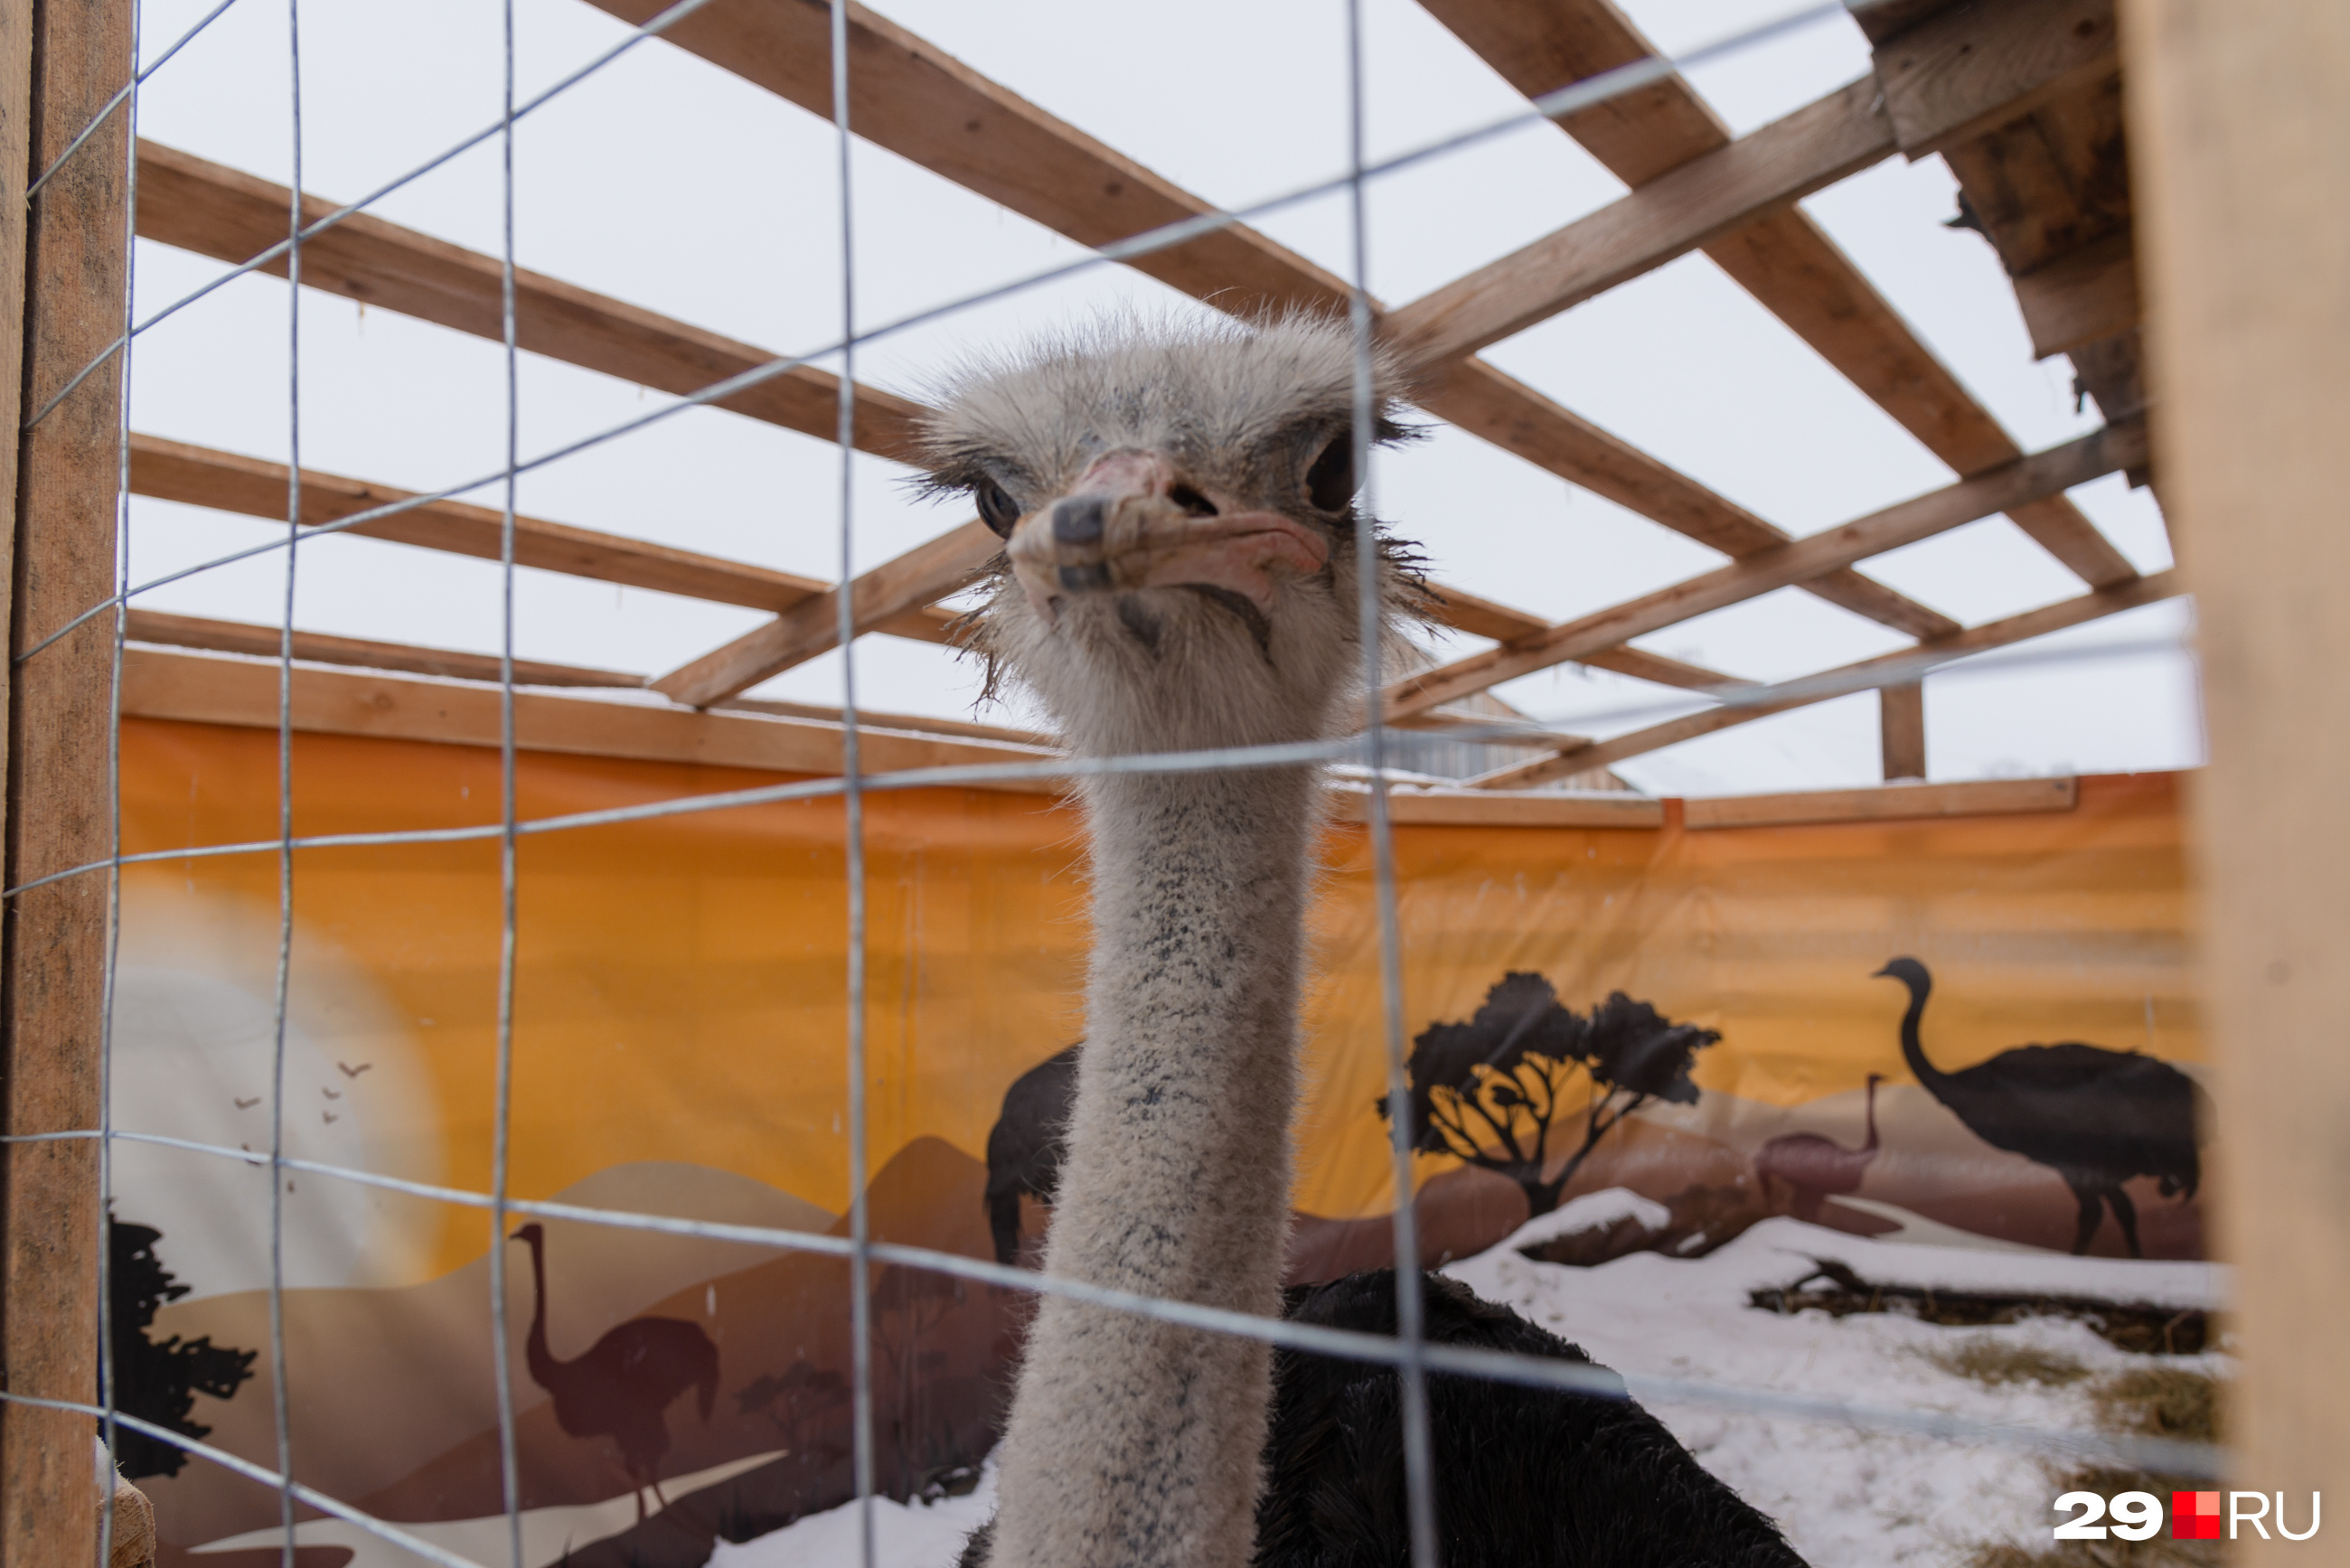 Еще страусы боятся заноз, поэтому деревянный загон частично завешен «баннером» с видами Африки